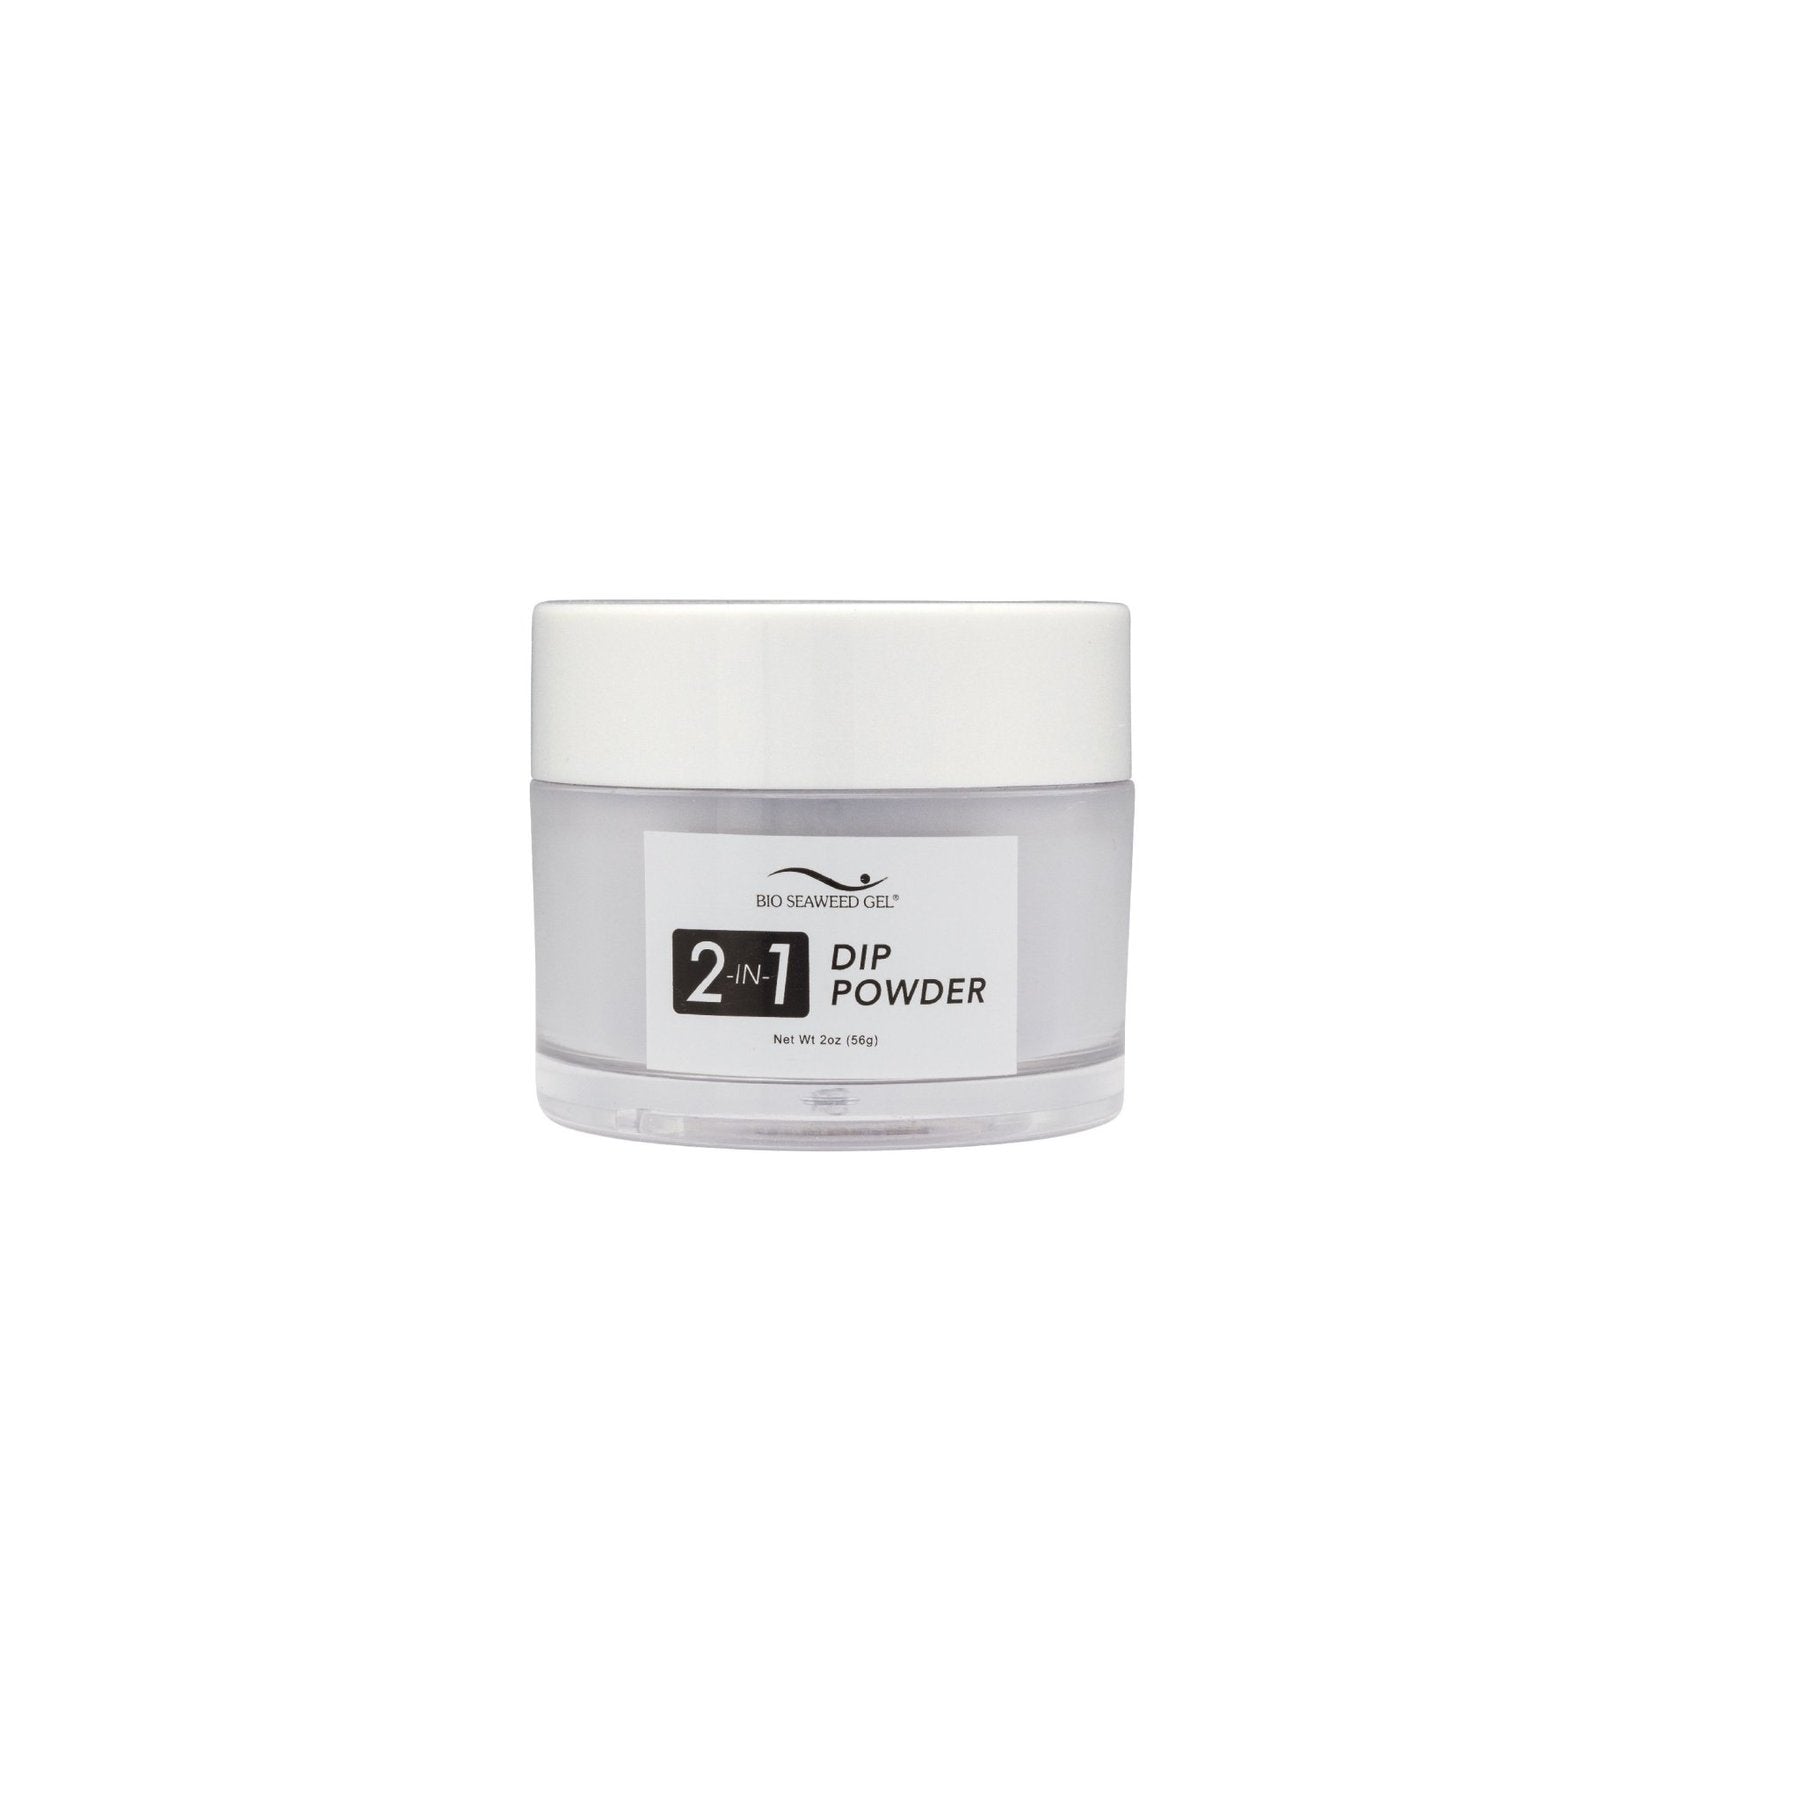 59 DAYDREAM | Bio Seaweed Gel® Dip Powder System - CM Nails & Beauty Supply